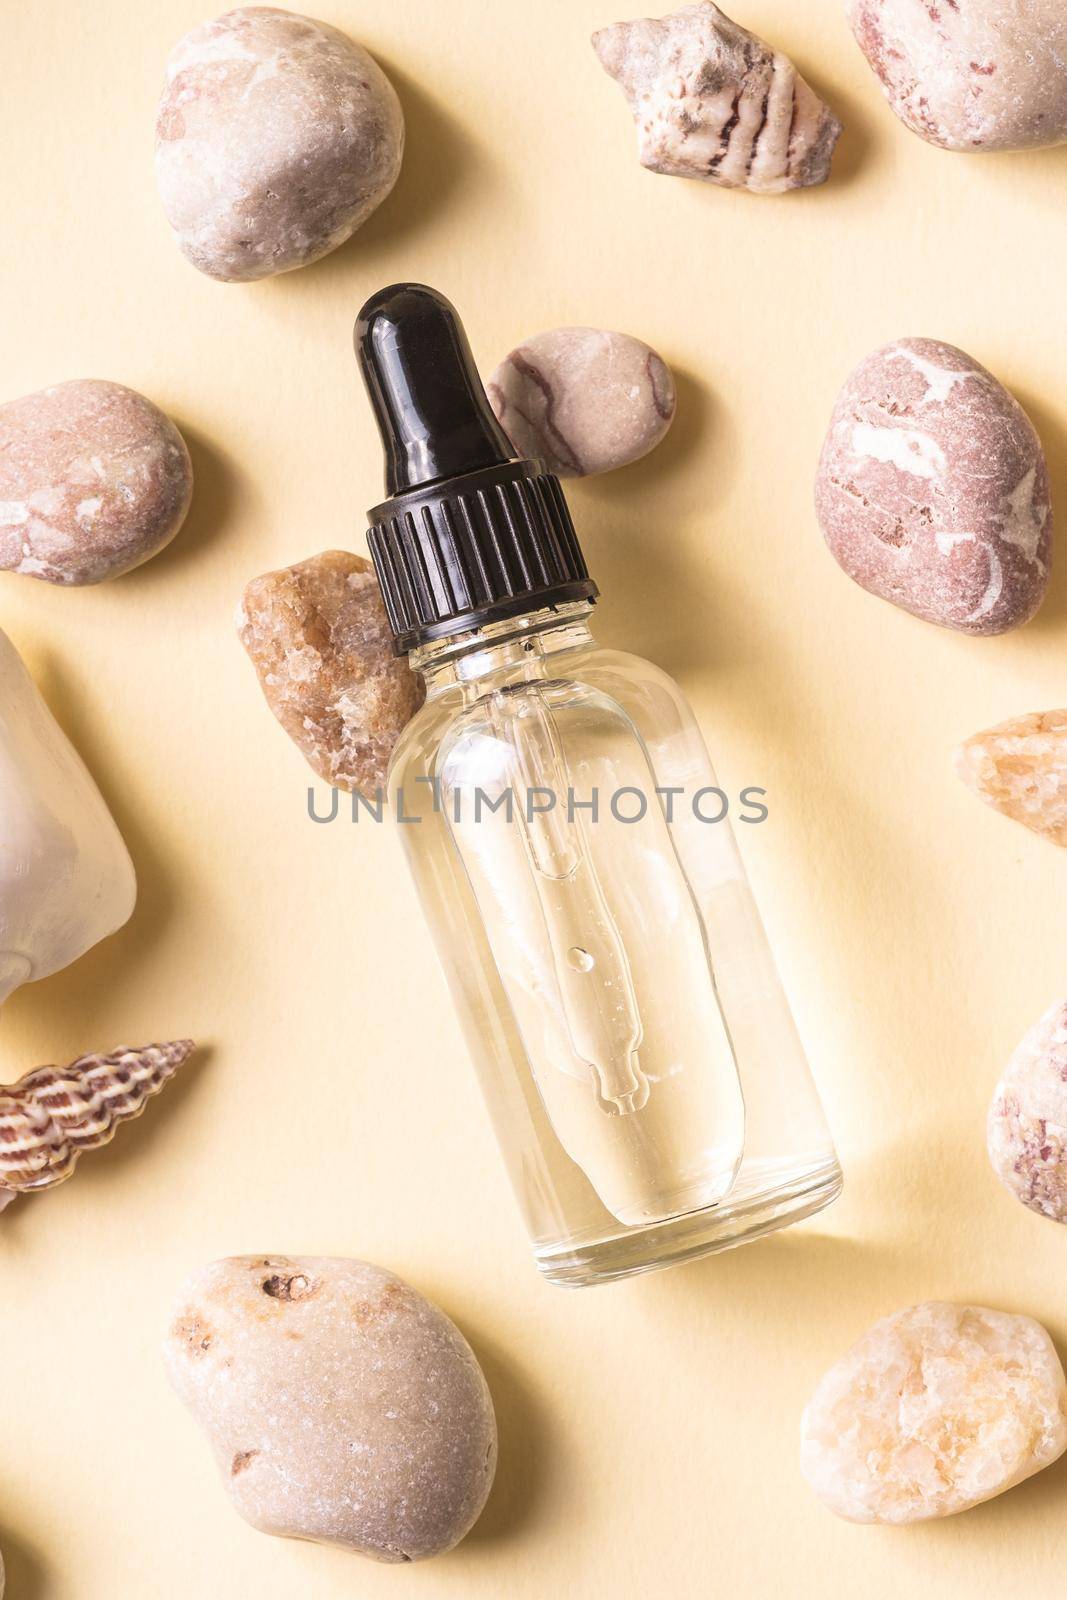 Skin care essence oil dropper in glass bottle on beige background